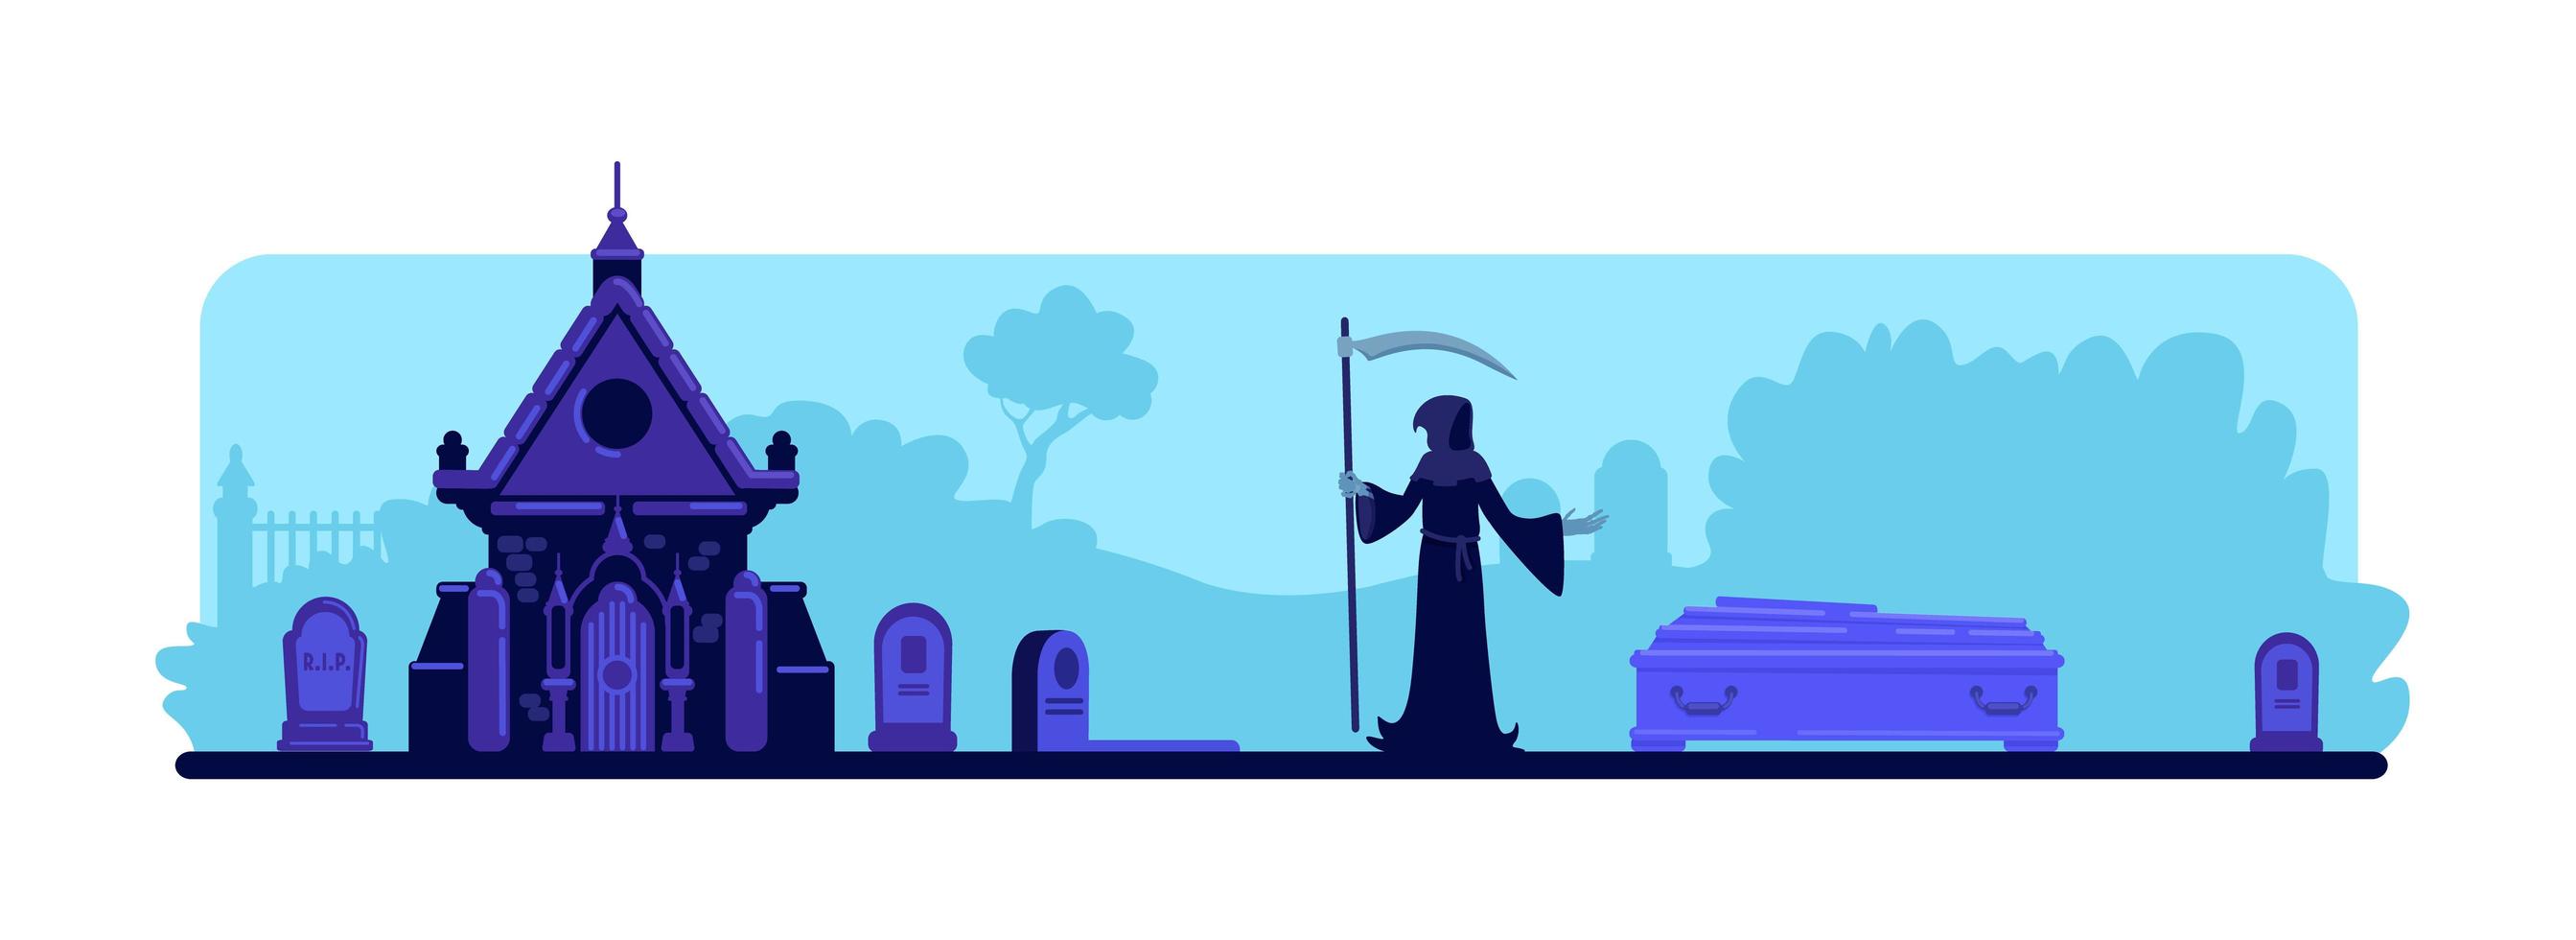 Grim Reaper al cimitero vettore